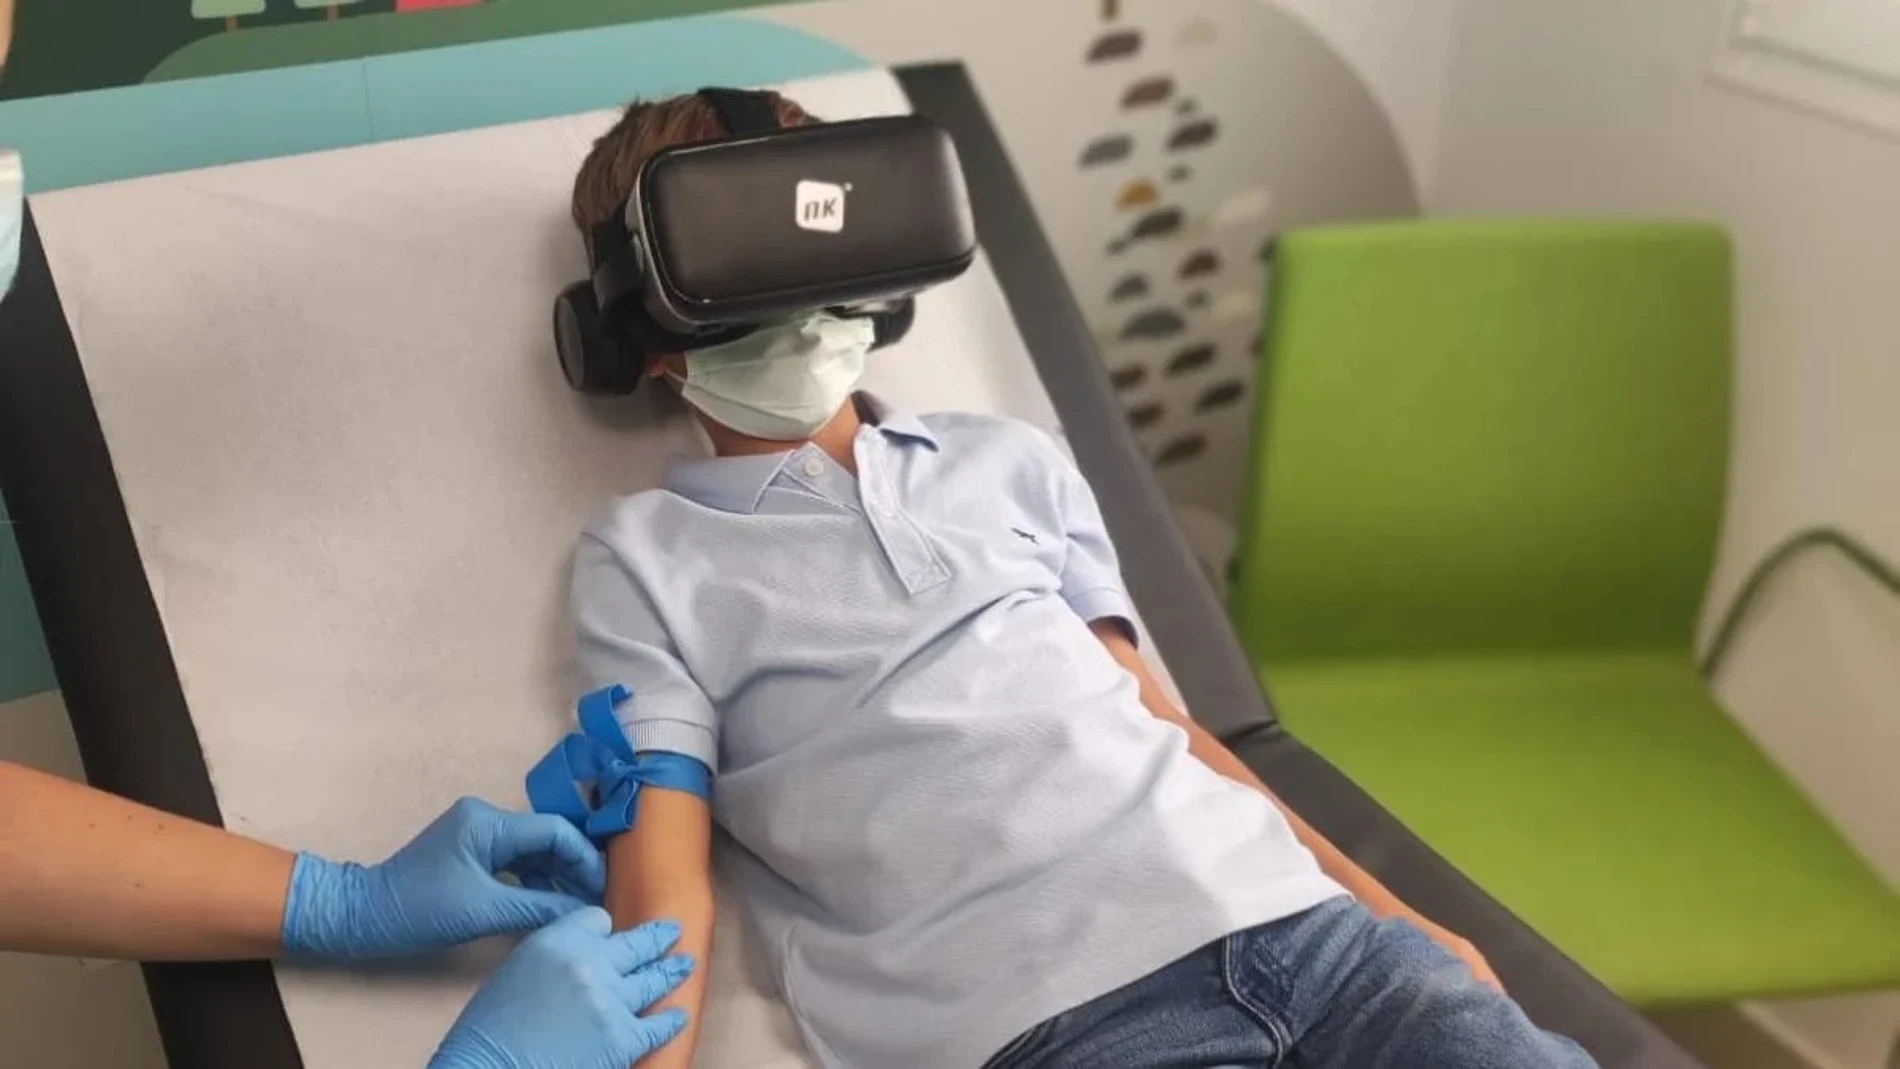 Niño sacándose sangre con realidad virtual